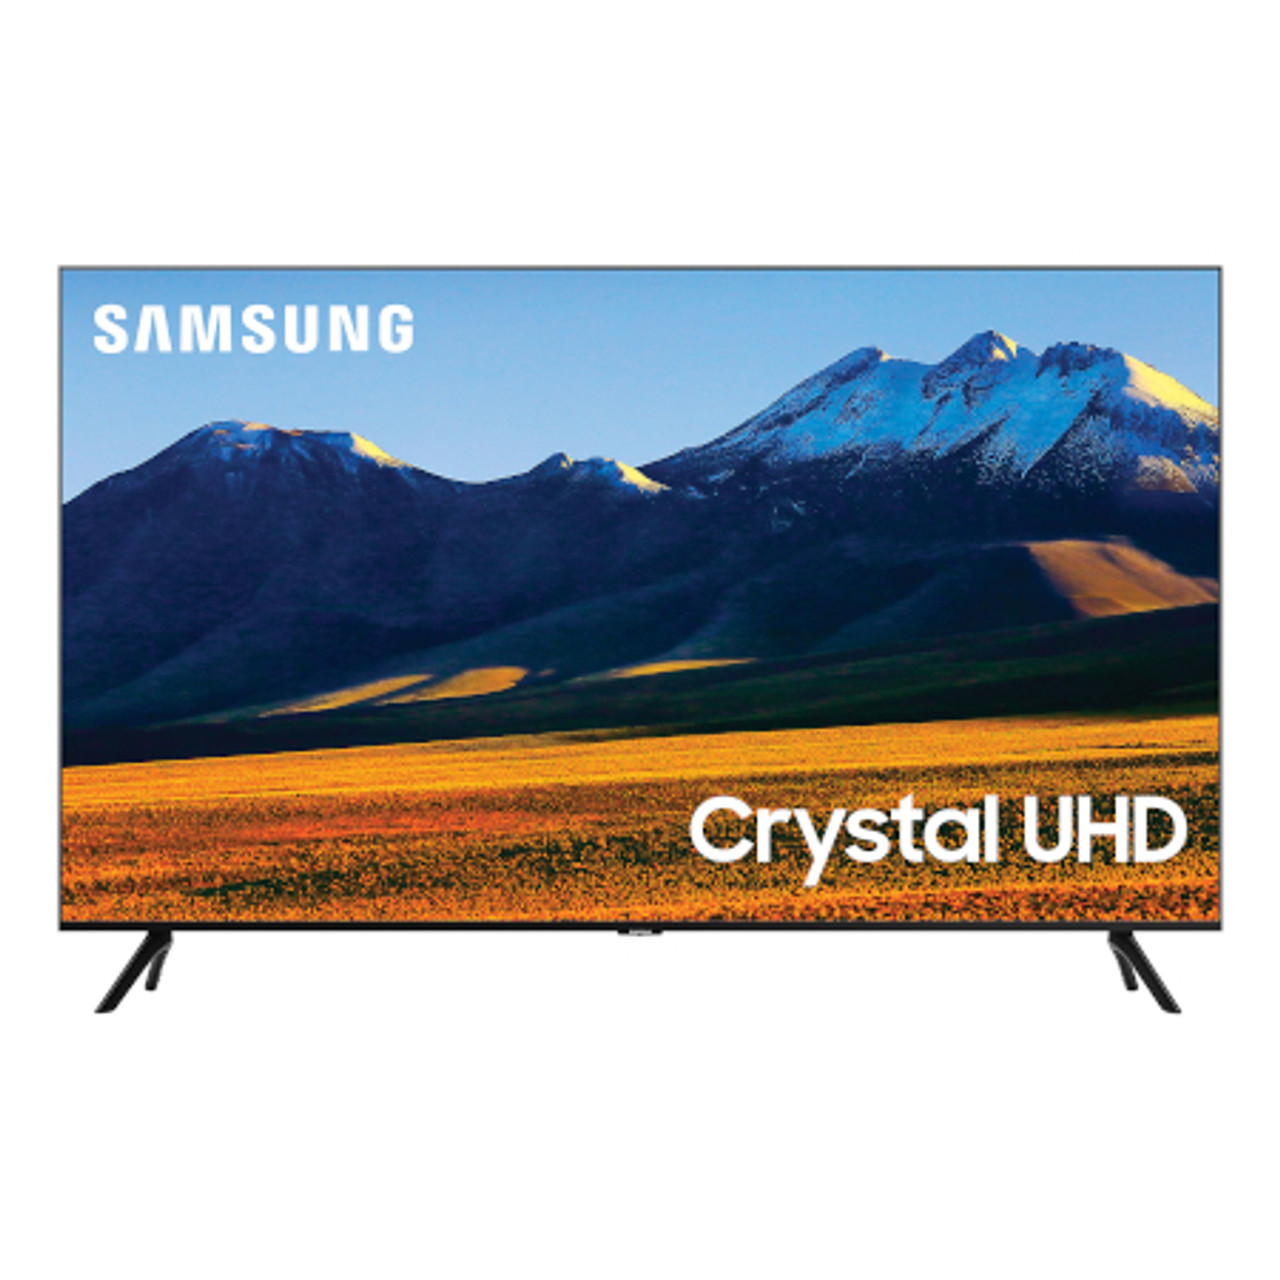 50 Vs 55 Vs 65-inch TV Size Comparison - Display Wow